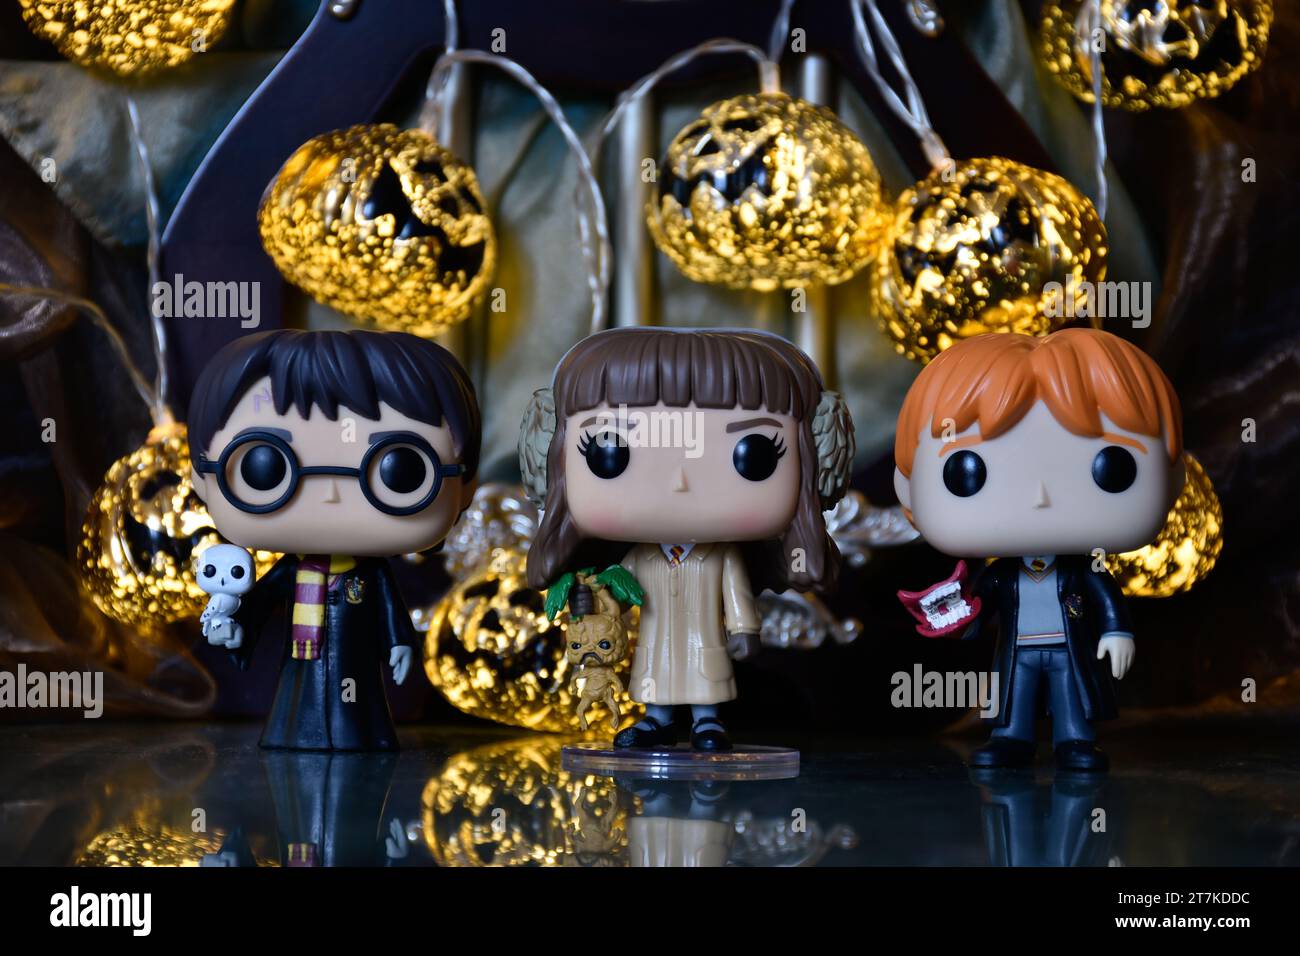 Figurines Funko Pop de Harry Potter, Hermione Granger et Ron Weasley. Lumières de citrouille Halloween, palais sombre, mystérieux, magique, saison effrayante. Banque D'Images